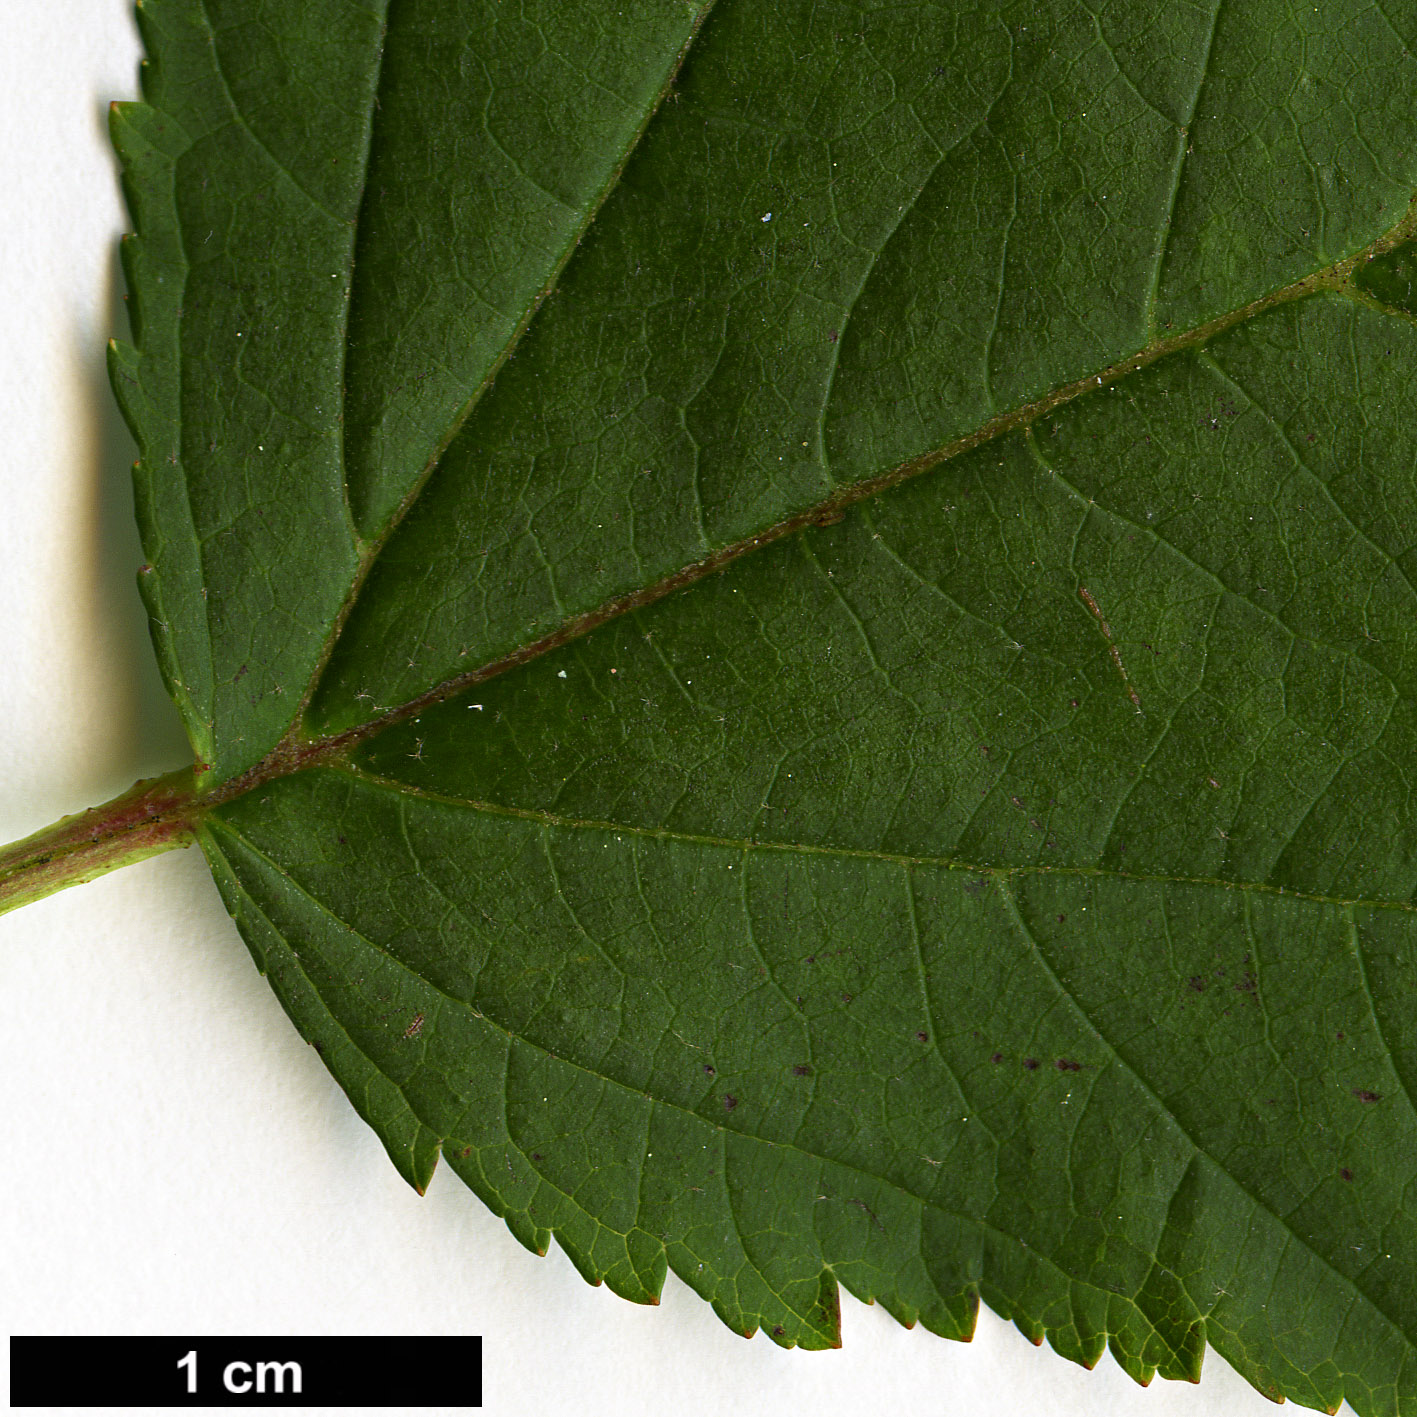 High resolution image: Family: Rosaceae - Genus: Physocarpus - Taxon: opulifolius